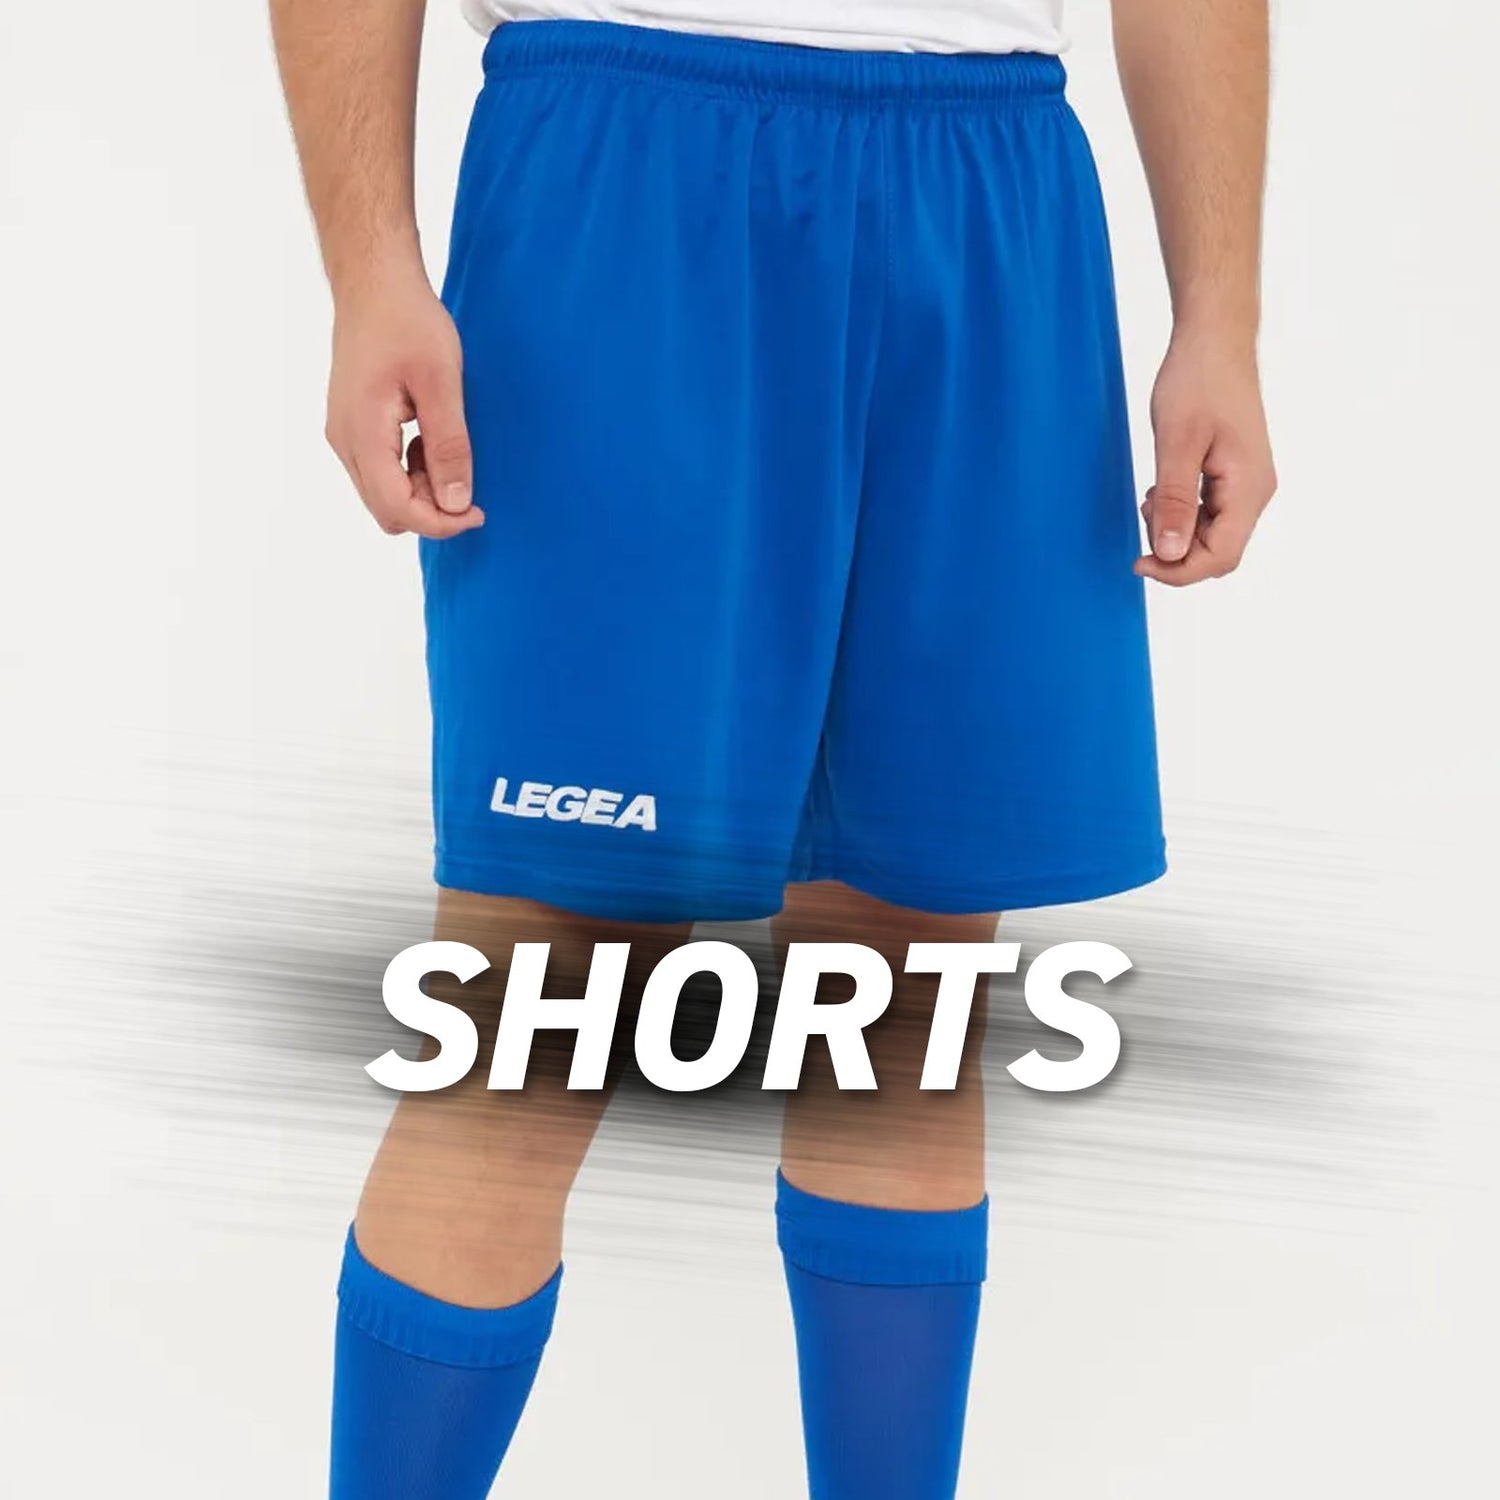 Shorts - Legea Australia